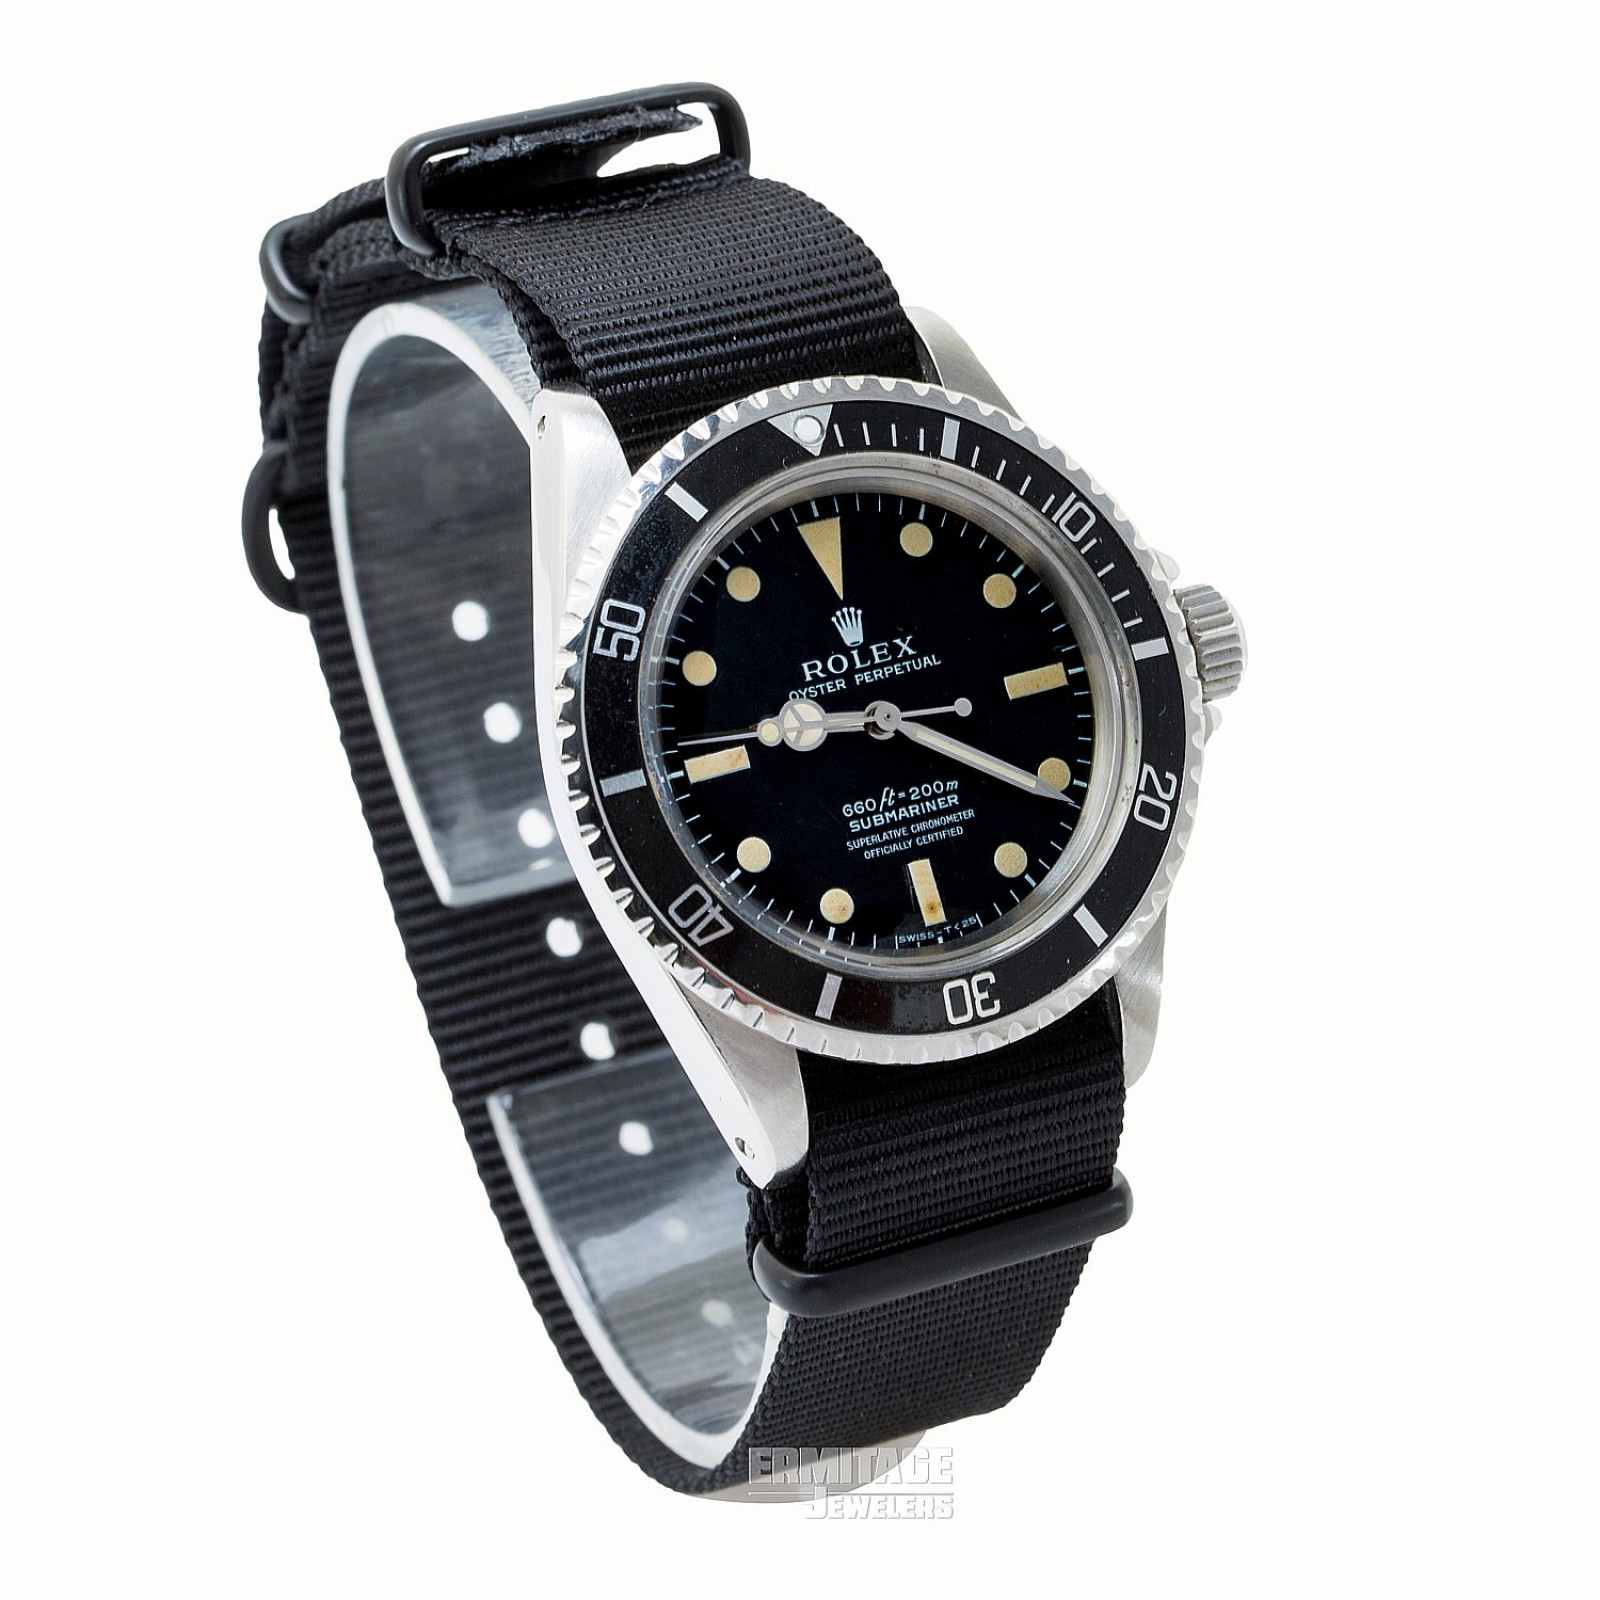 1967 Rolex Submariner Ref. 5512